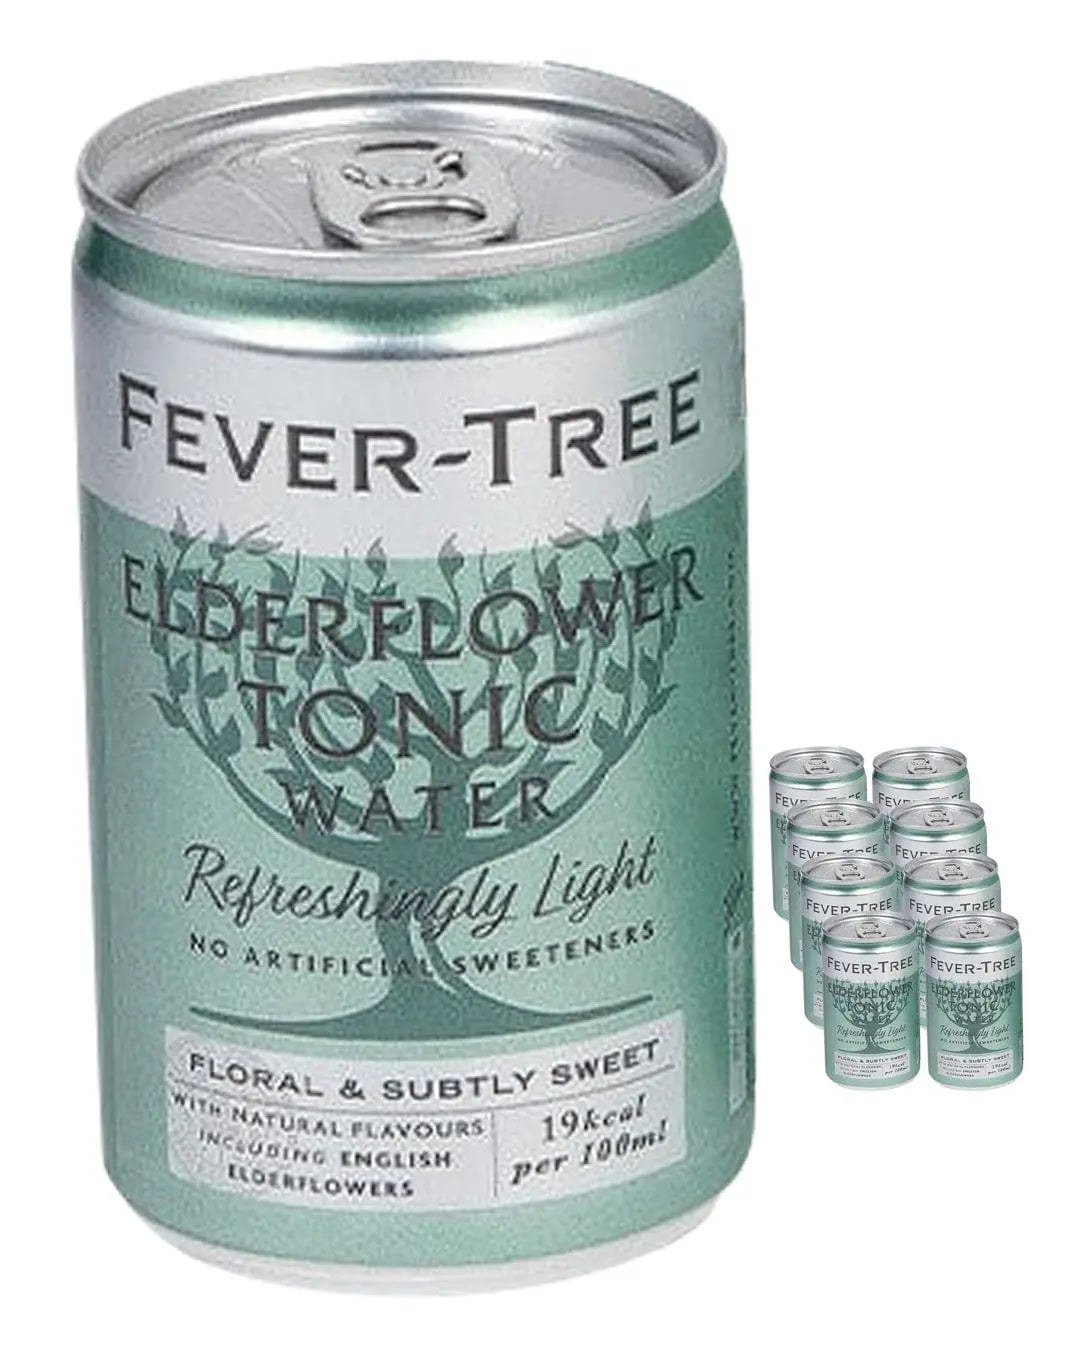 Fever-Tree Refreshingly Light Elderflower Tonic Water Fridge Pack, 8 x 150 ml Tonics 05060108452120